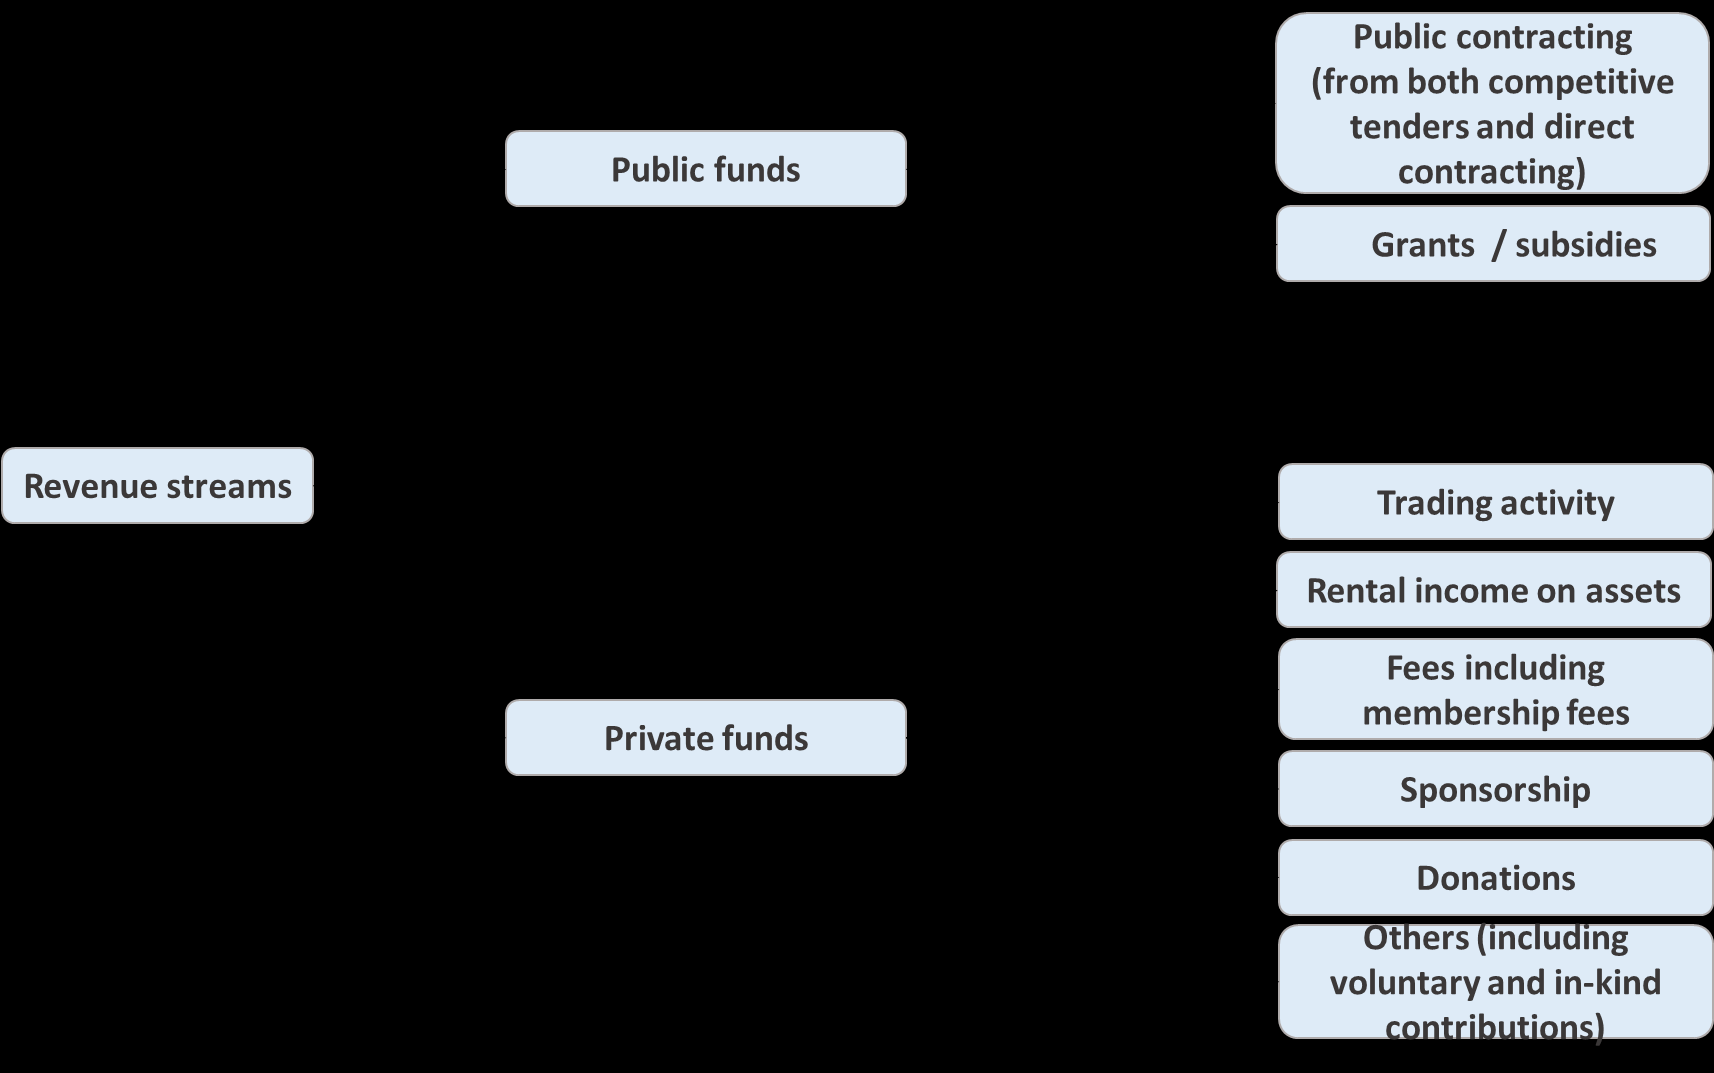 Figure 3: Revenue streams for social enterprises Adapted from Spiess-Knafl (2012) Finanzierung von Sozialunternehmen - Eine empirische und theoretische Analyse.